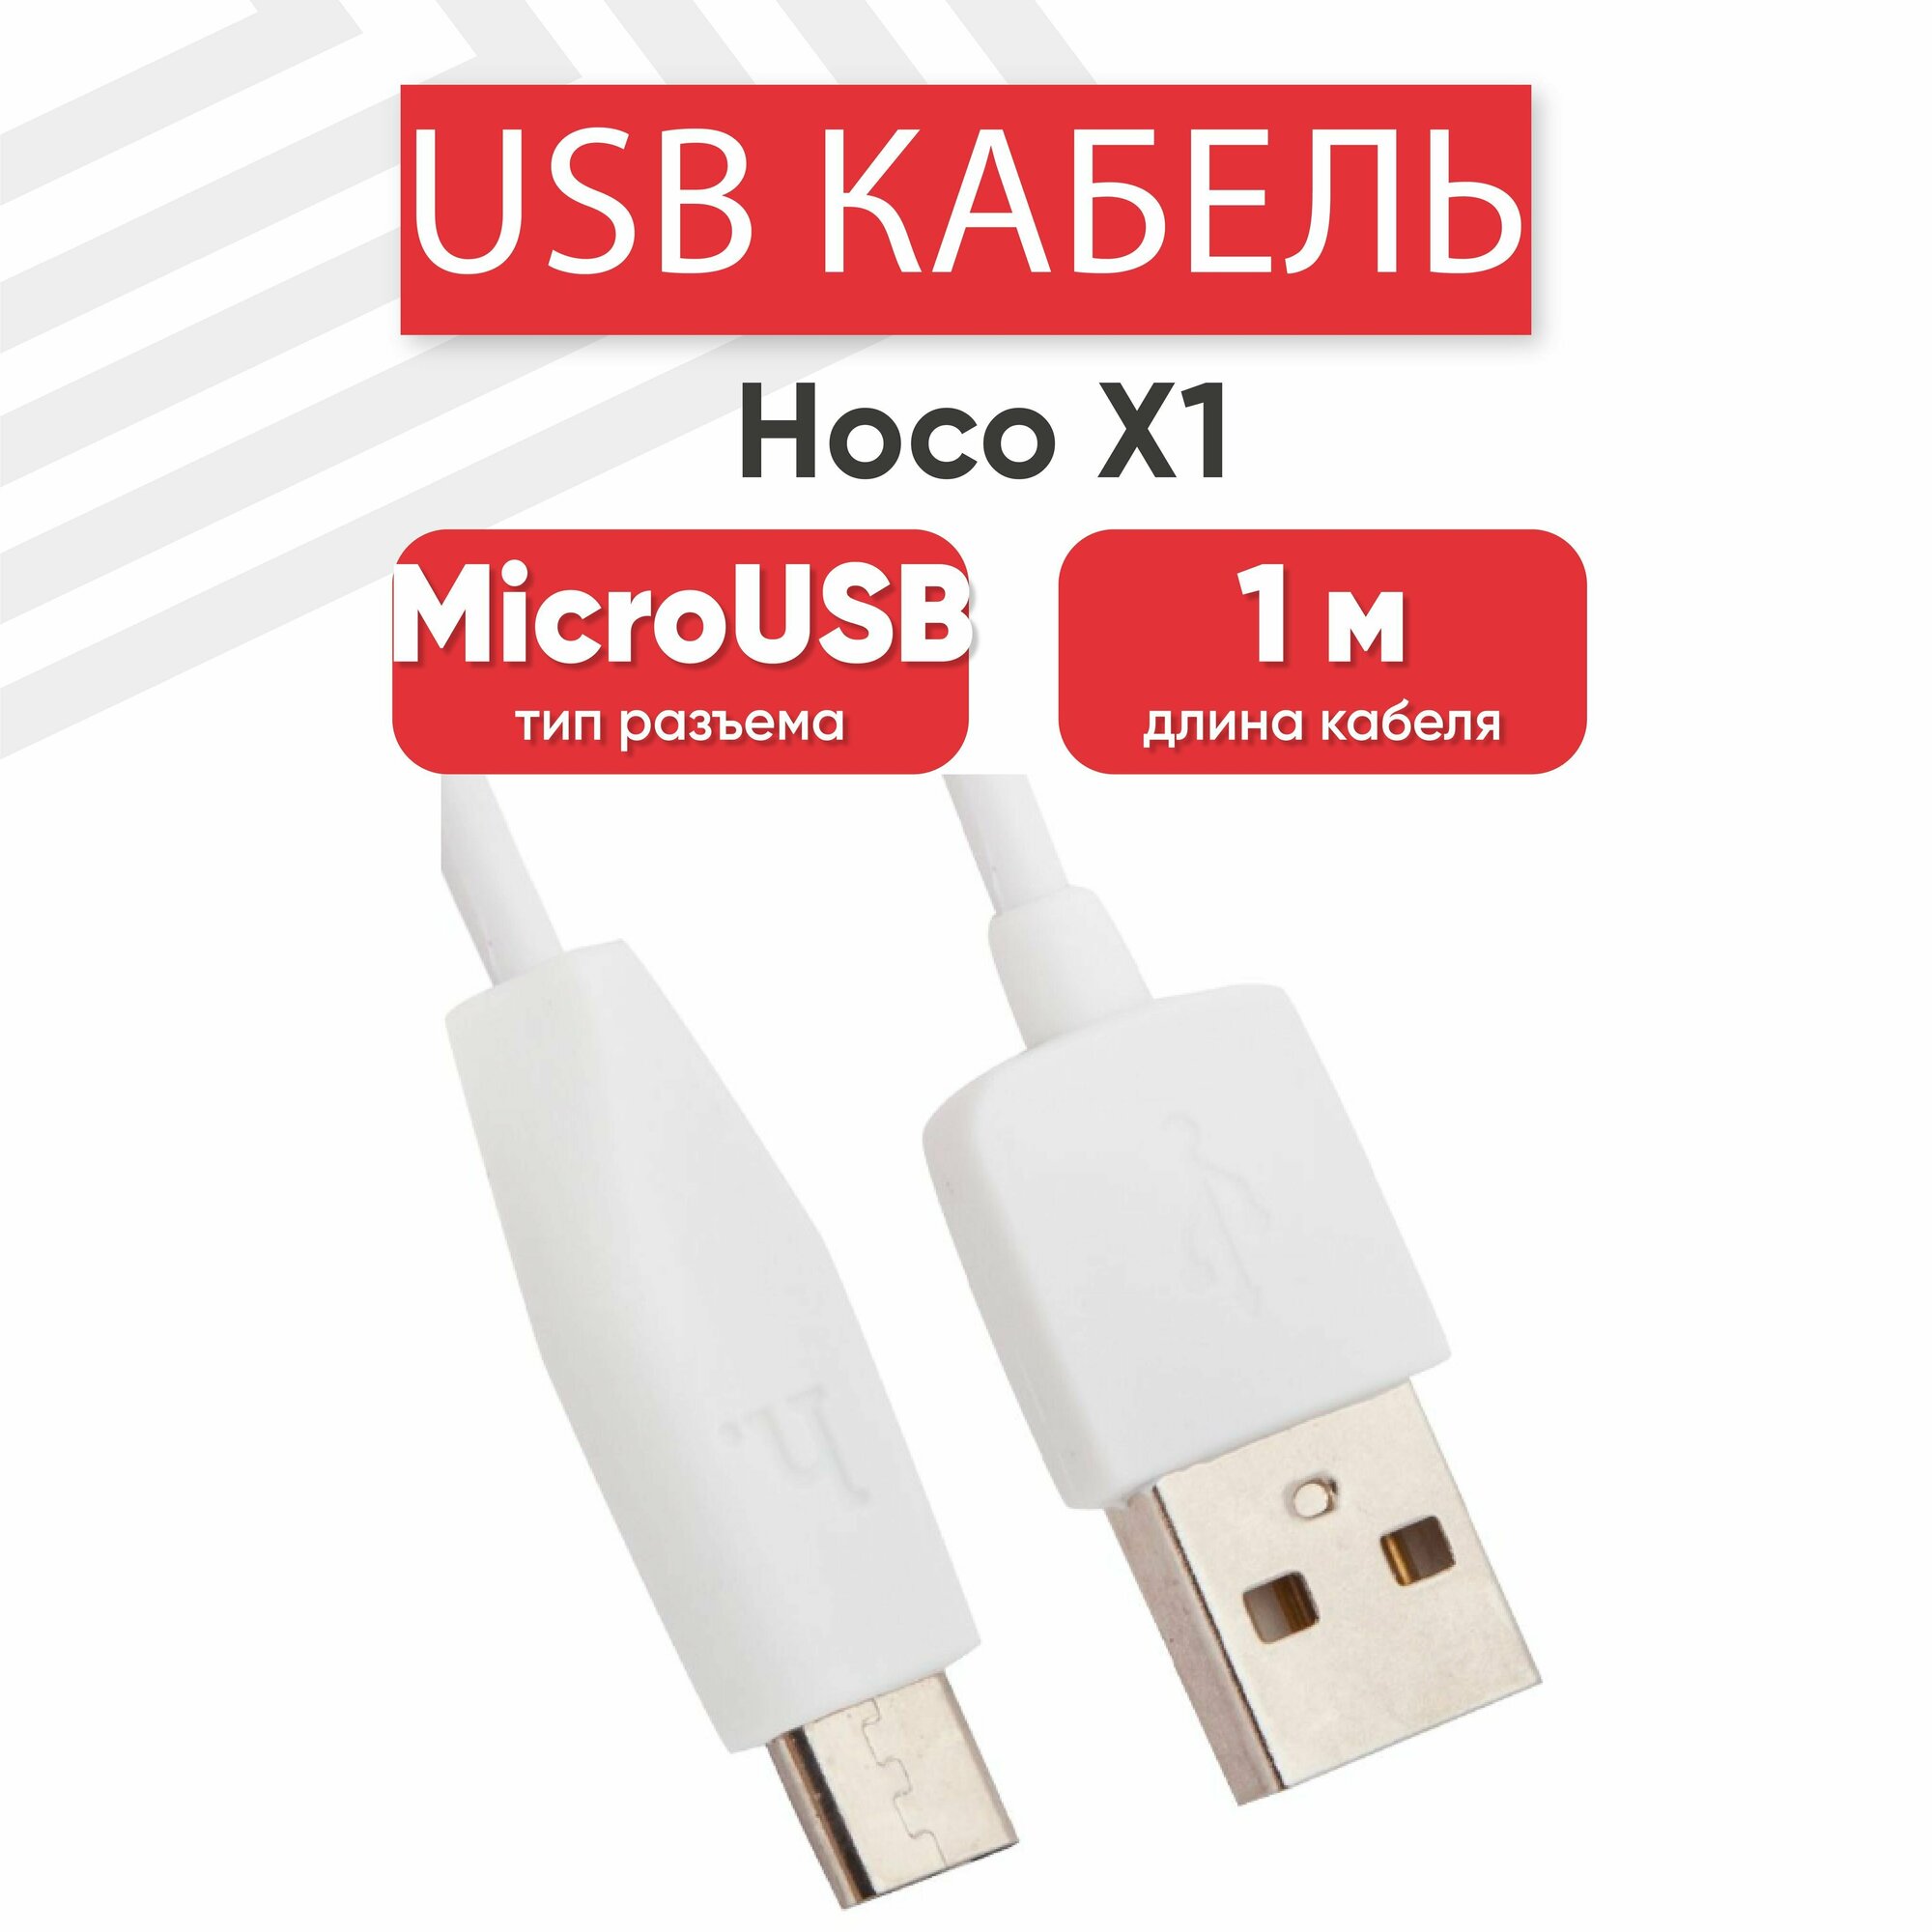 USB кабель Hoco X1 для зарядки, передачи данных, MicroUSB, 2.4А, 1 метр, PVC, белый